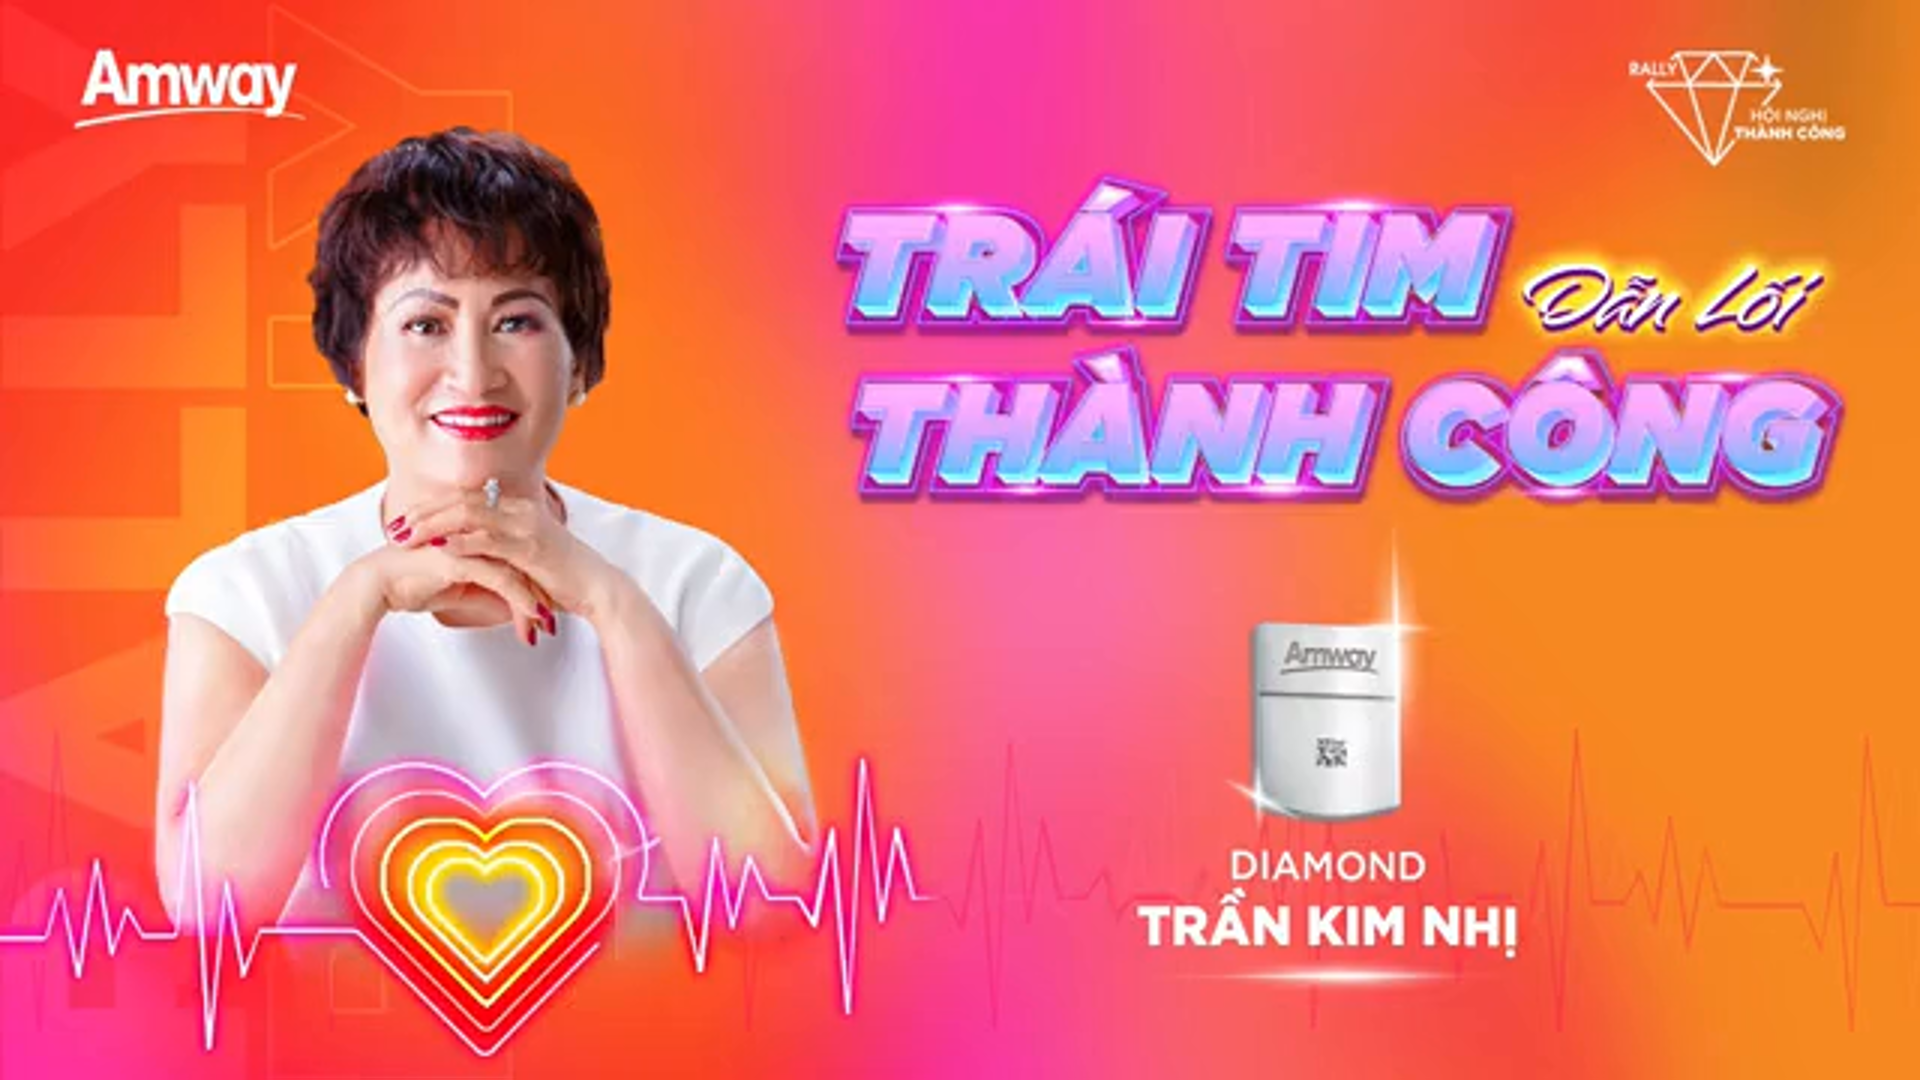 Câu chuyện thành công của diamond Trần Thị Kim Nhị | Trái tim dẫn lối Thành Công